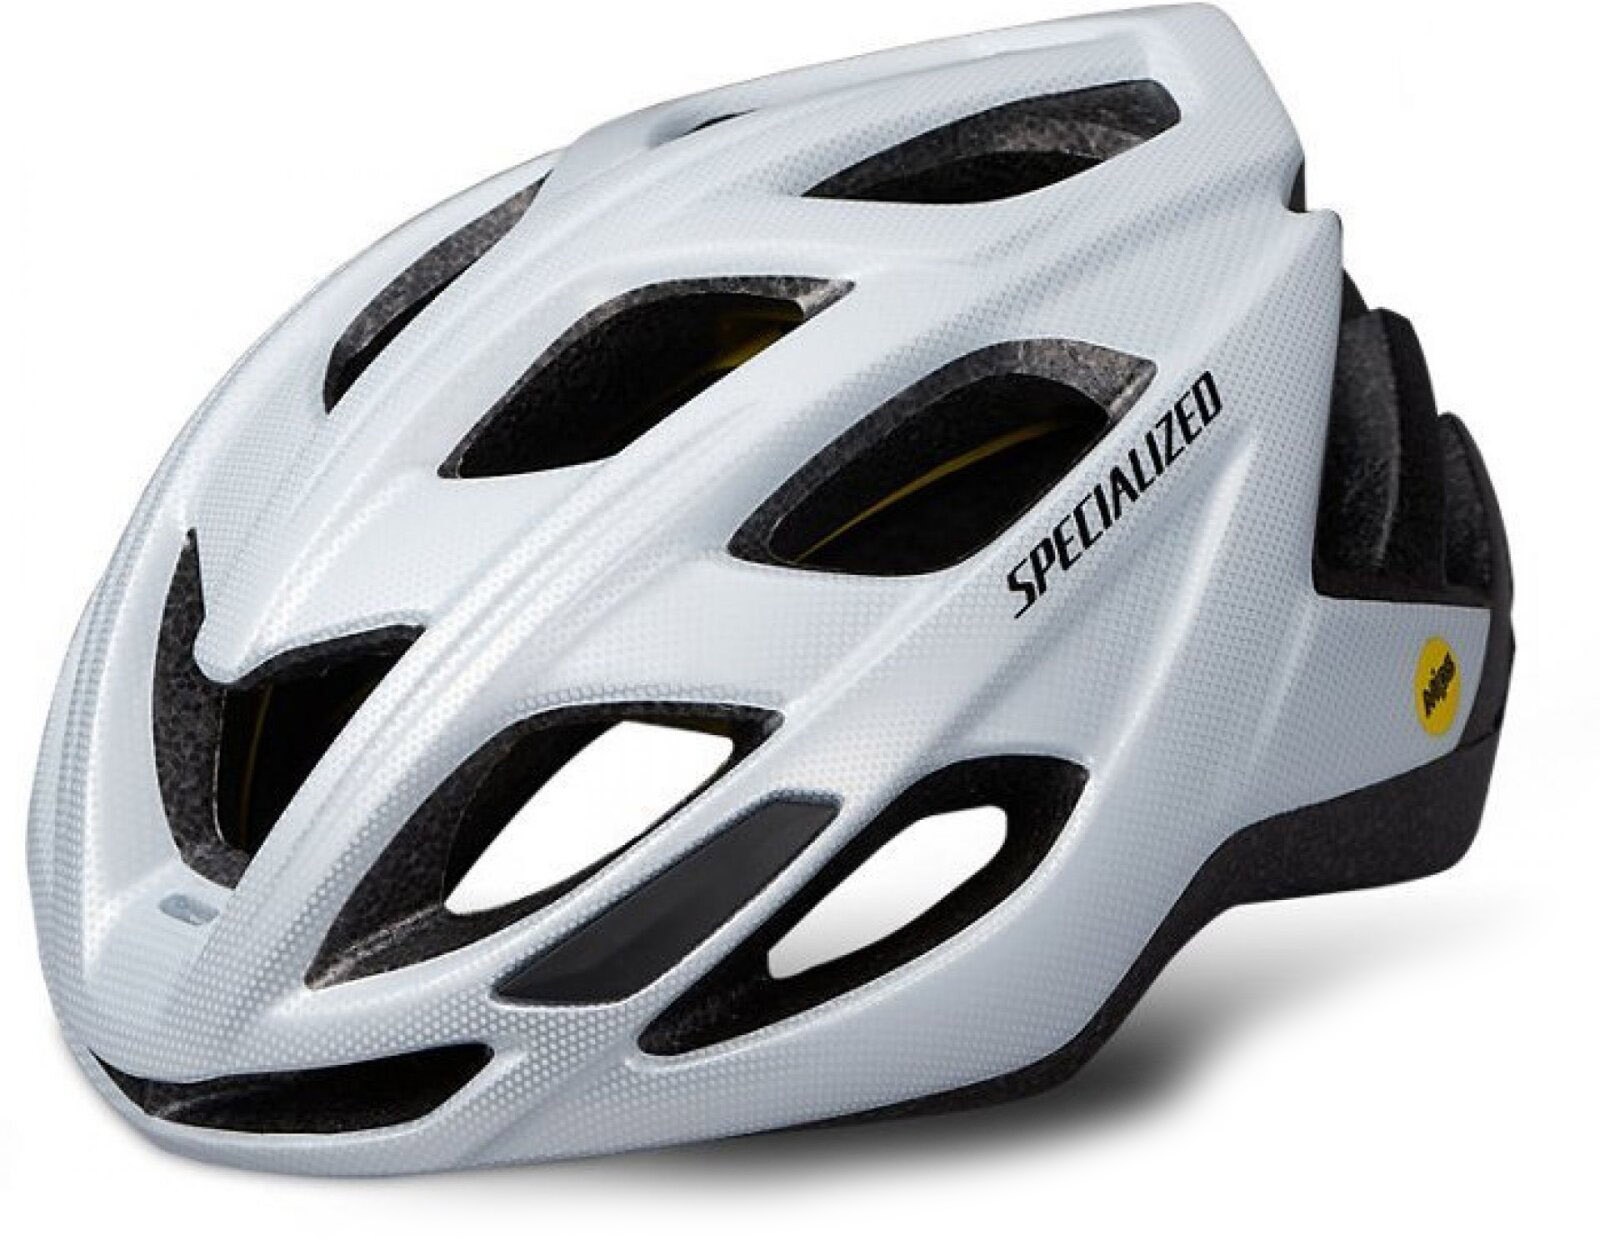 Royal familie Misbrug Ejendommelige Specialized Chamonix MIPS cykelhjelm - Hvid » Helmet Size: SM/MED  (51cm-55cm)